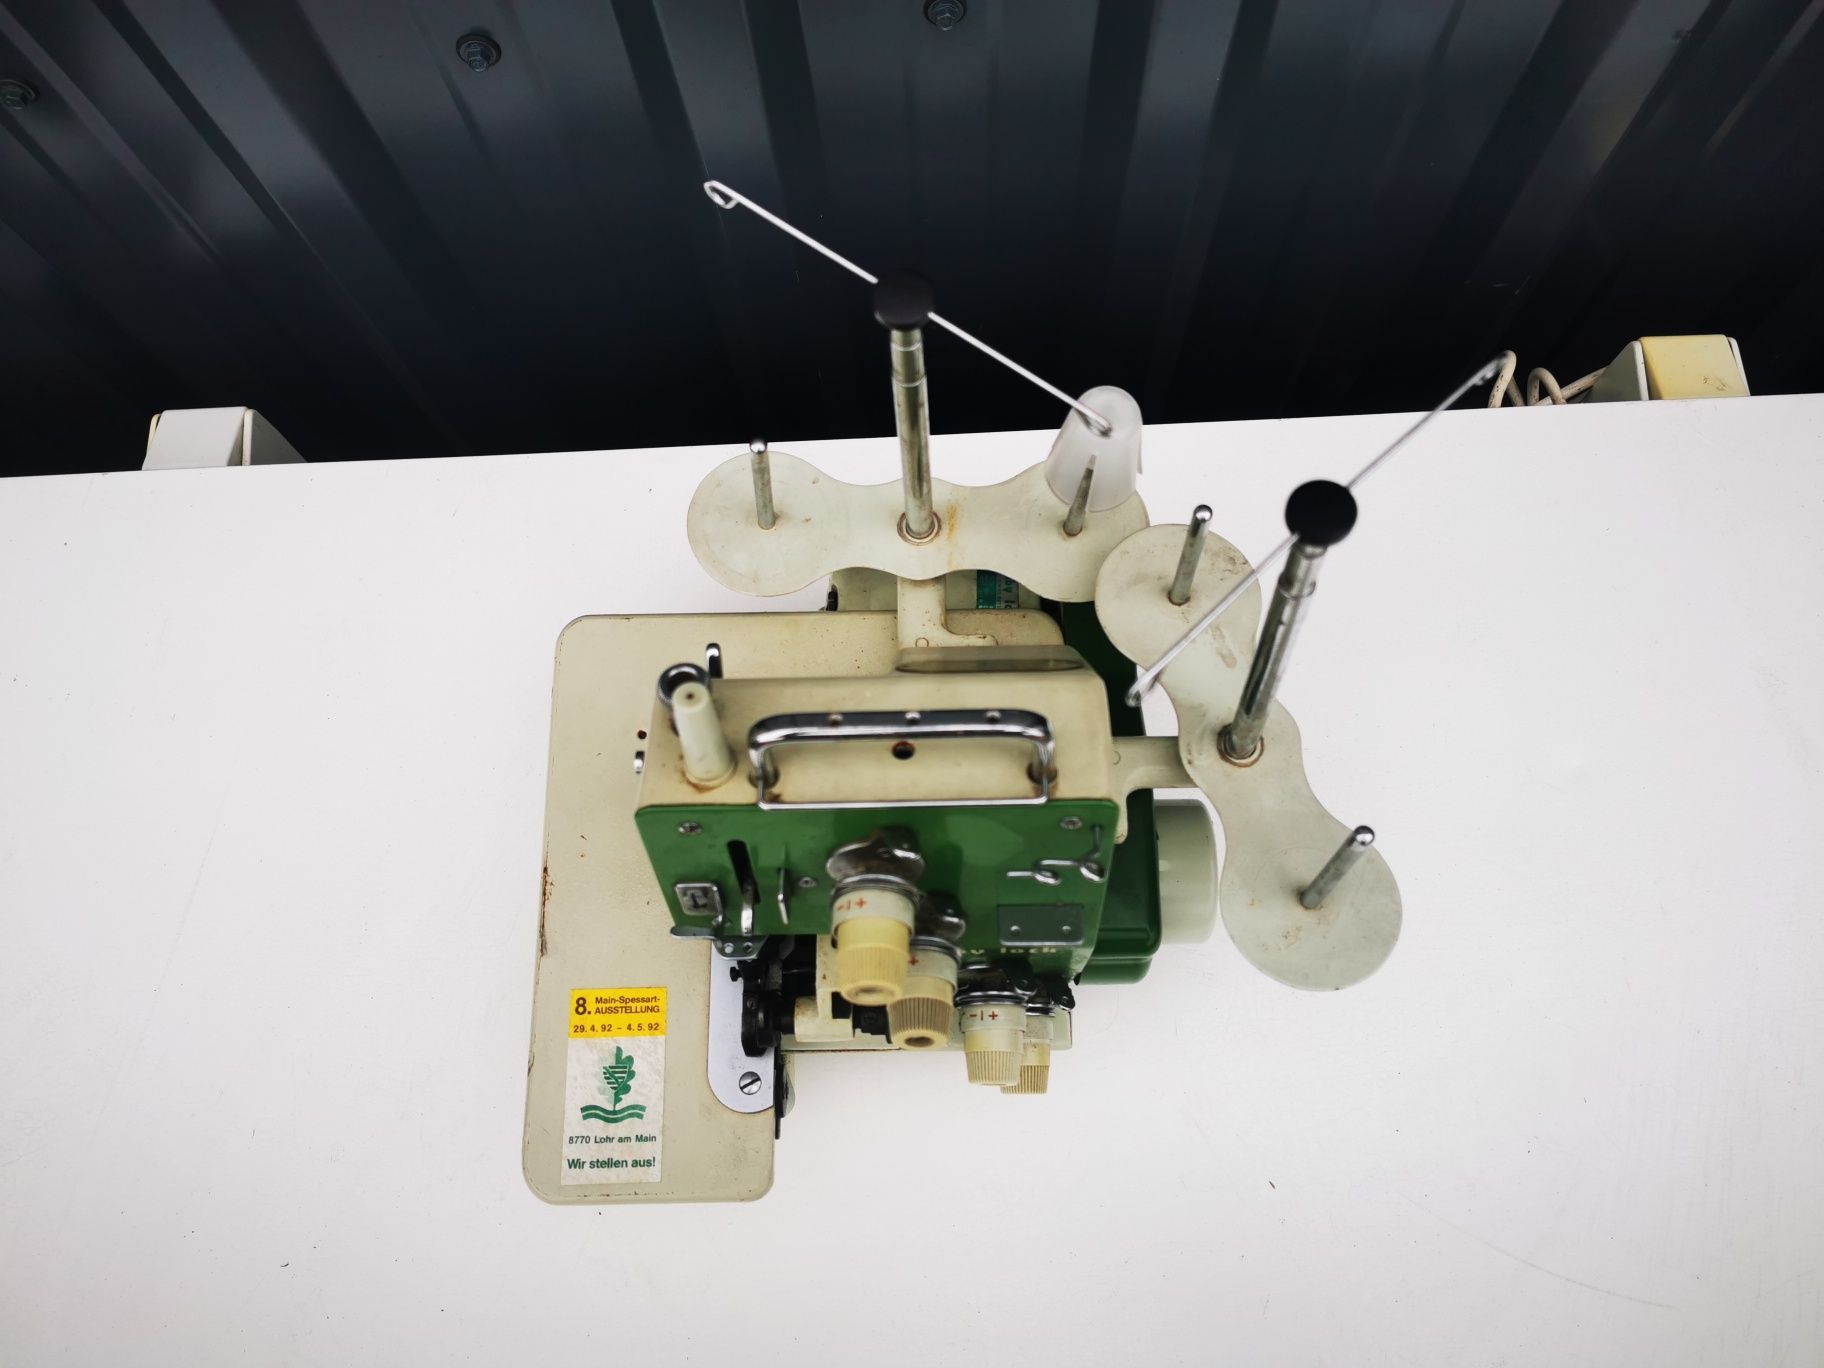 Maszyna do szycia owerlok STROBEL EA-605 baby lock z Niemiec